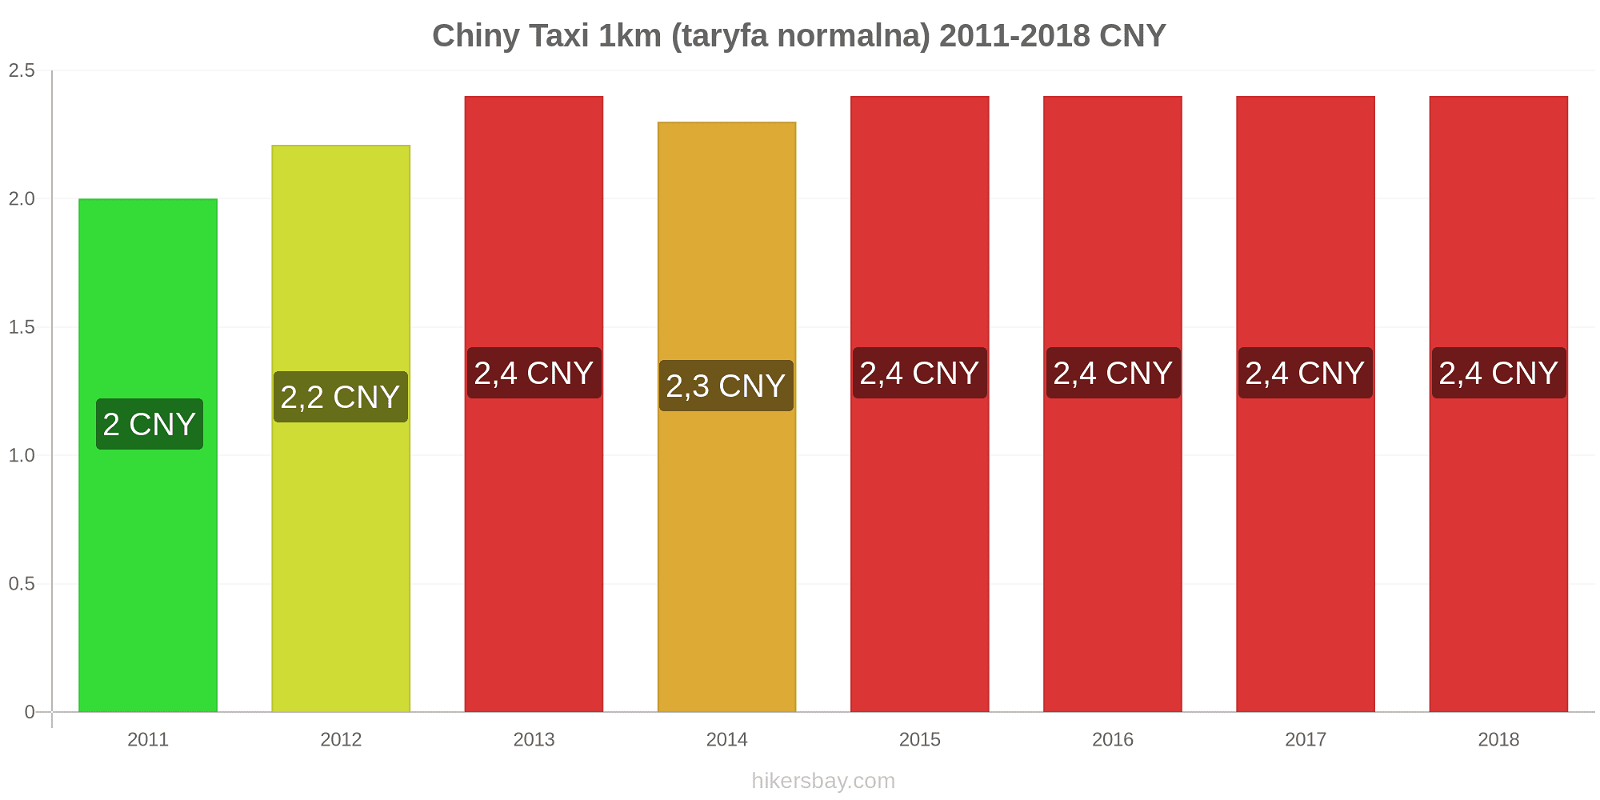 Chiny zmiany cen Taxi 1km (taryfa normalna) hikersbay.com